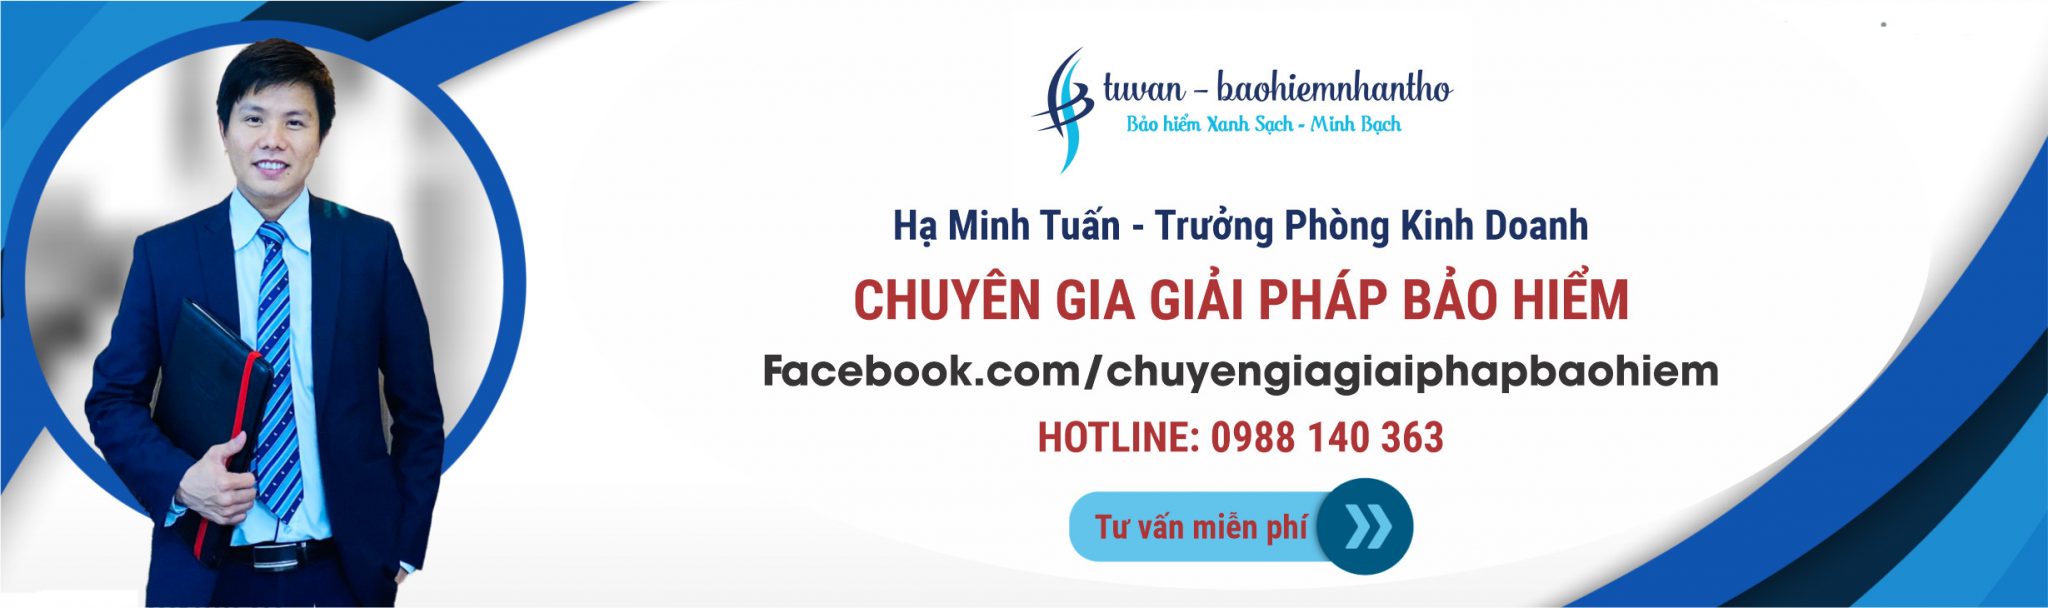 Hà Minh Tuấn - chuyên gia giải pháp bảo hiểm